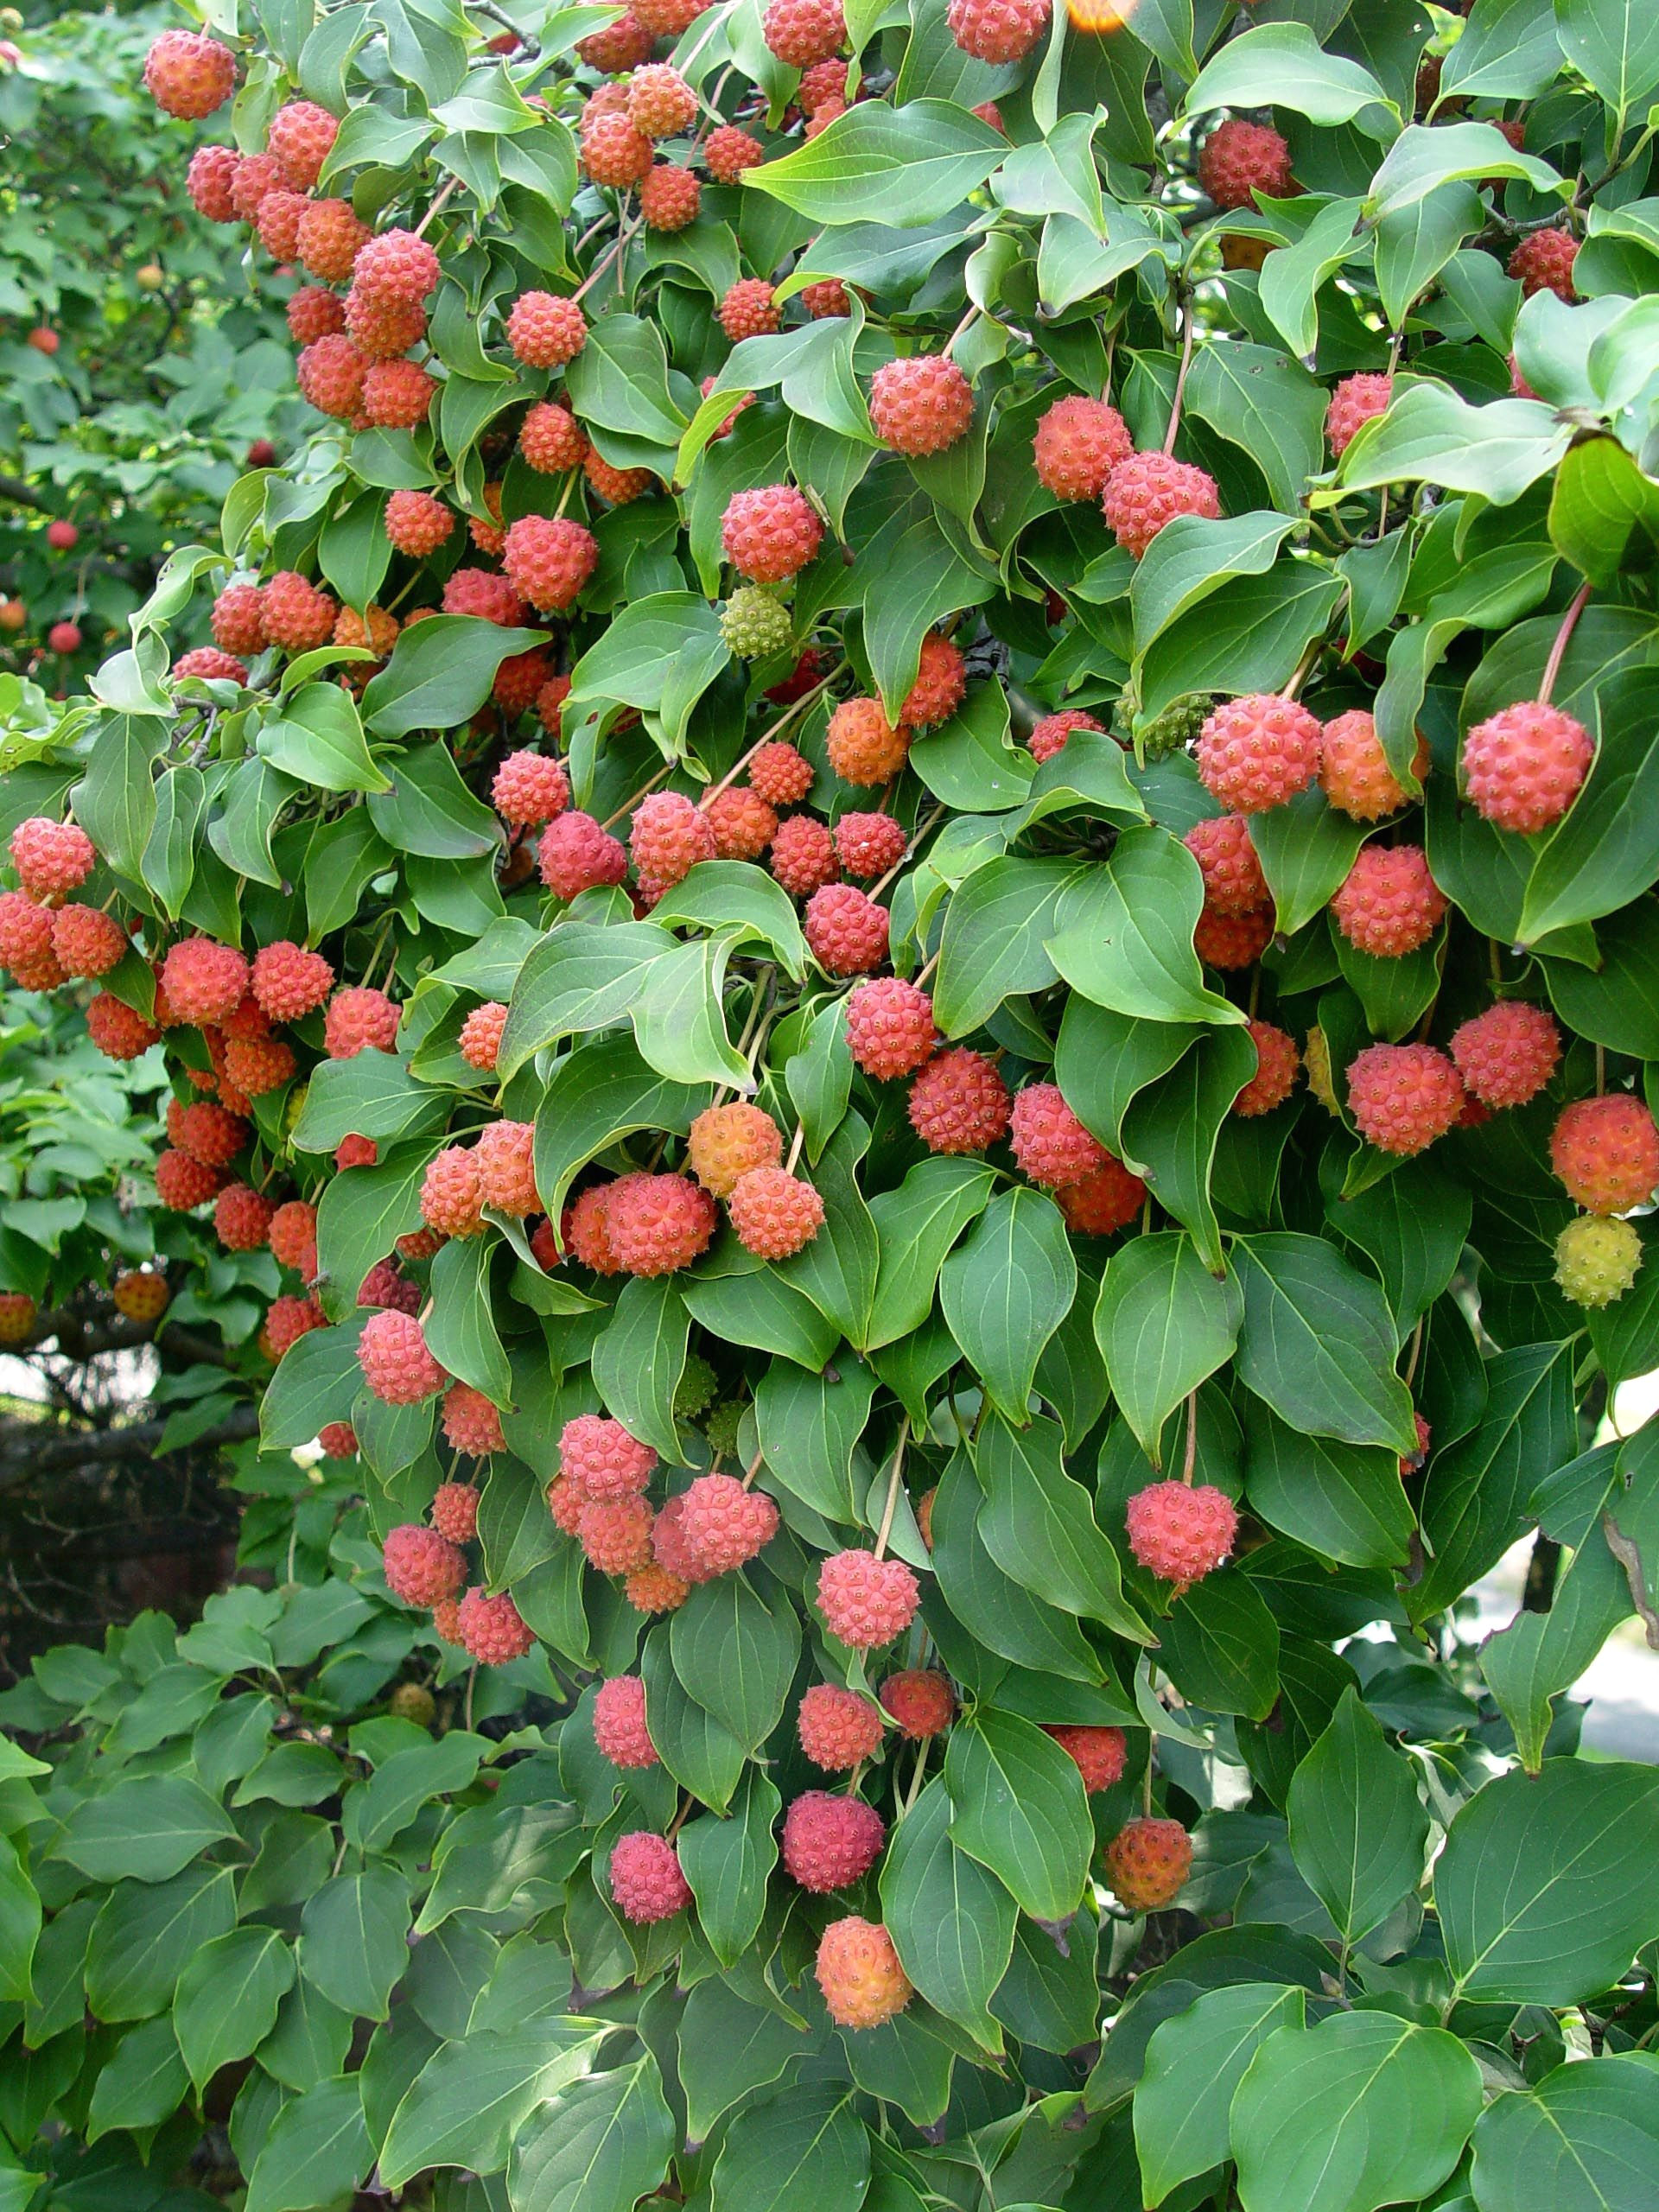 kousa dogwood fall fruit edible to animals and people